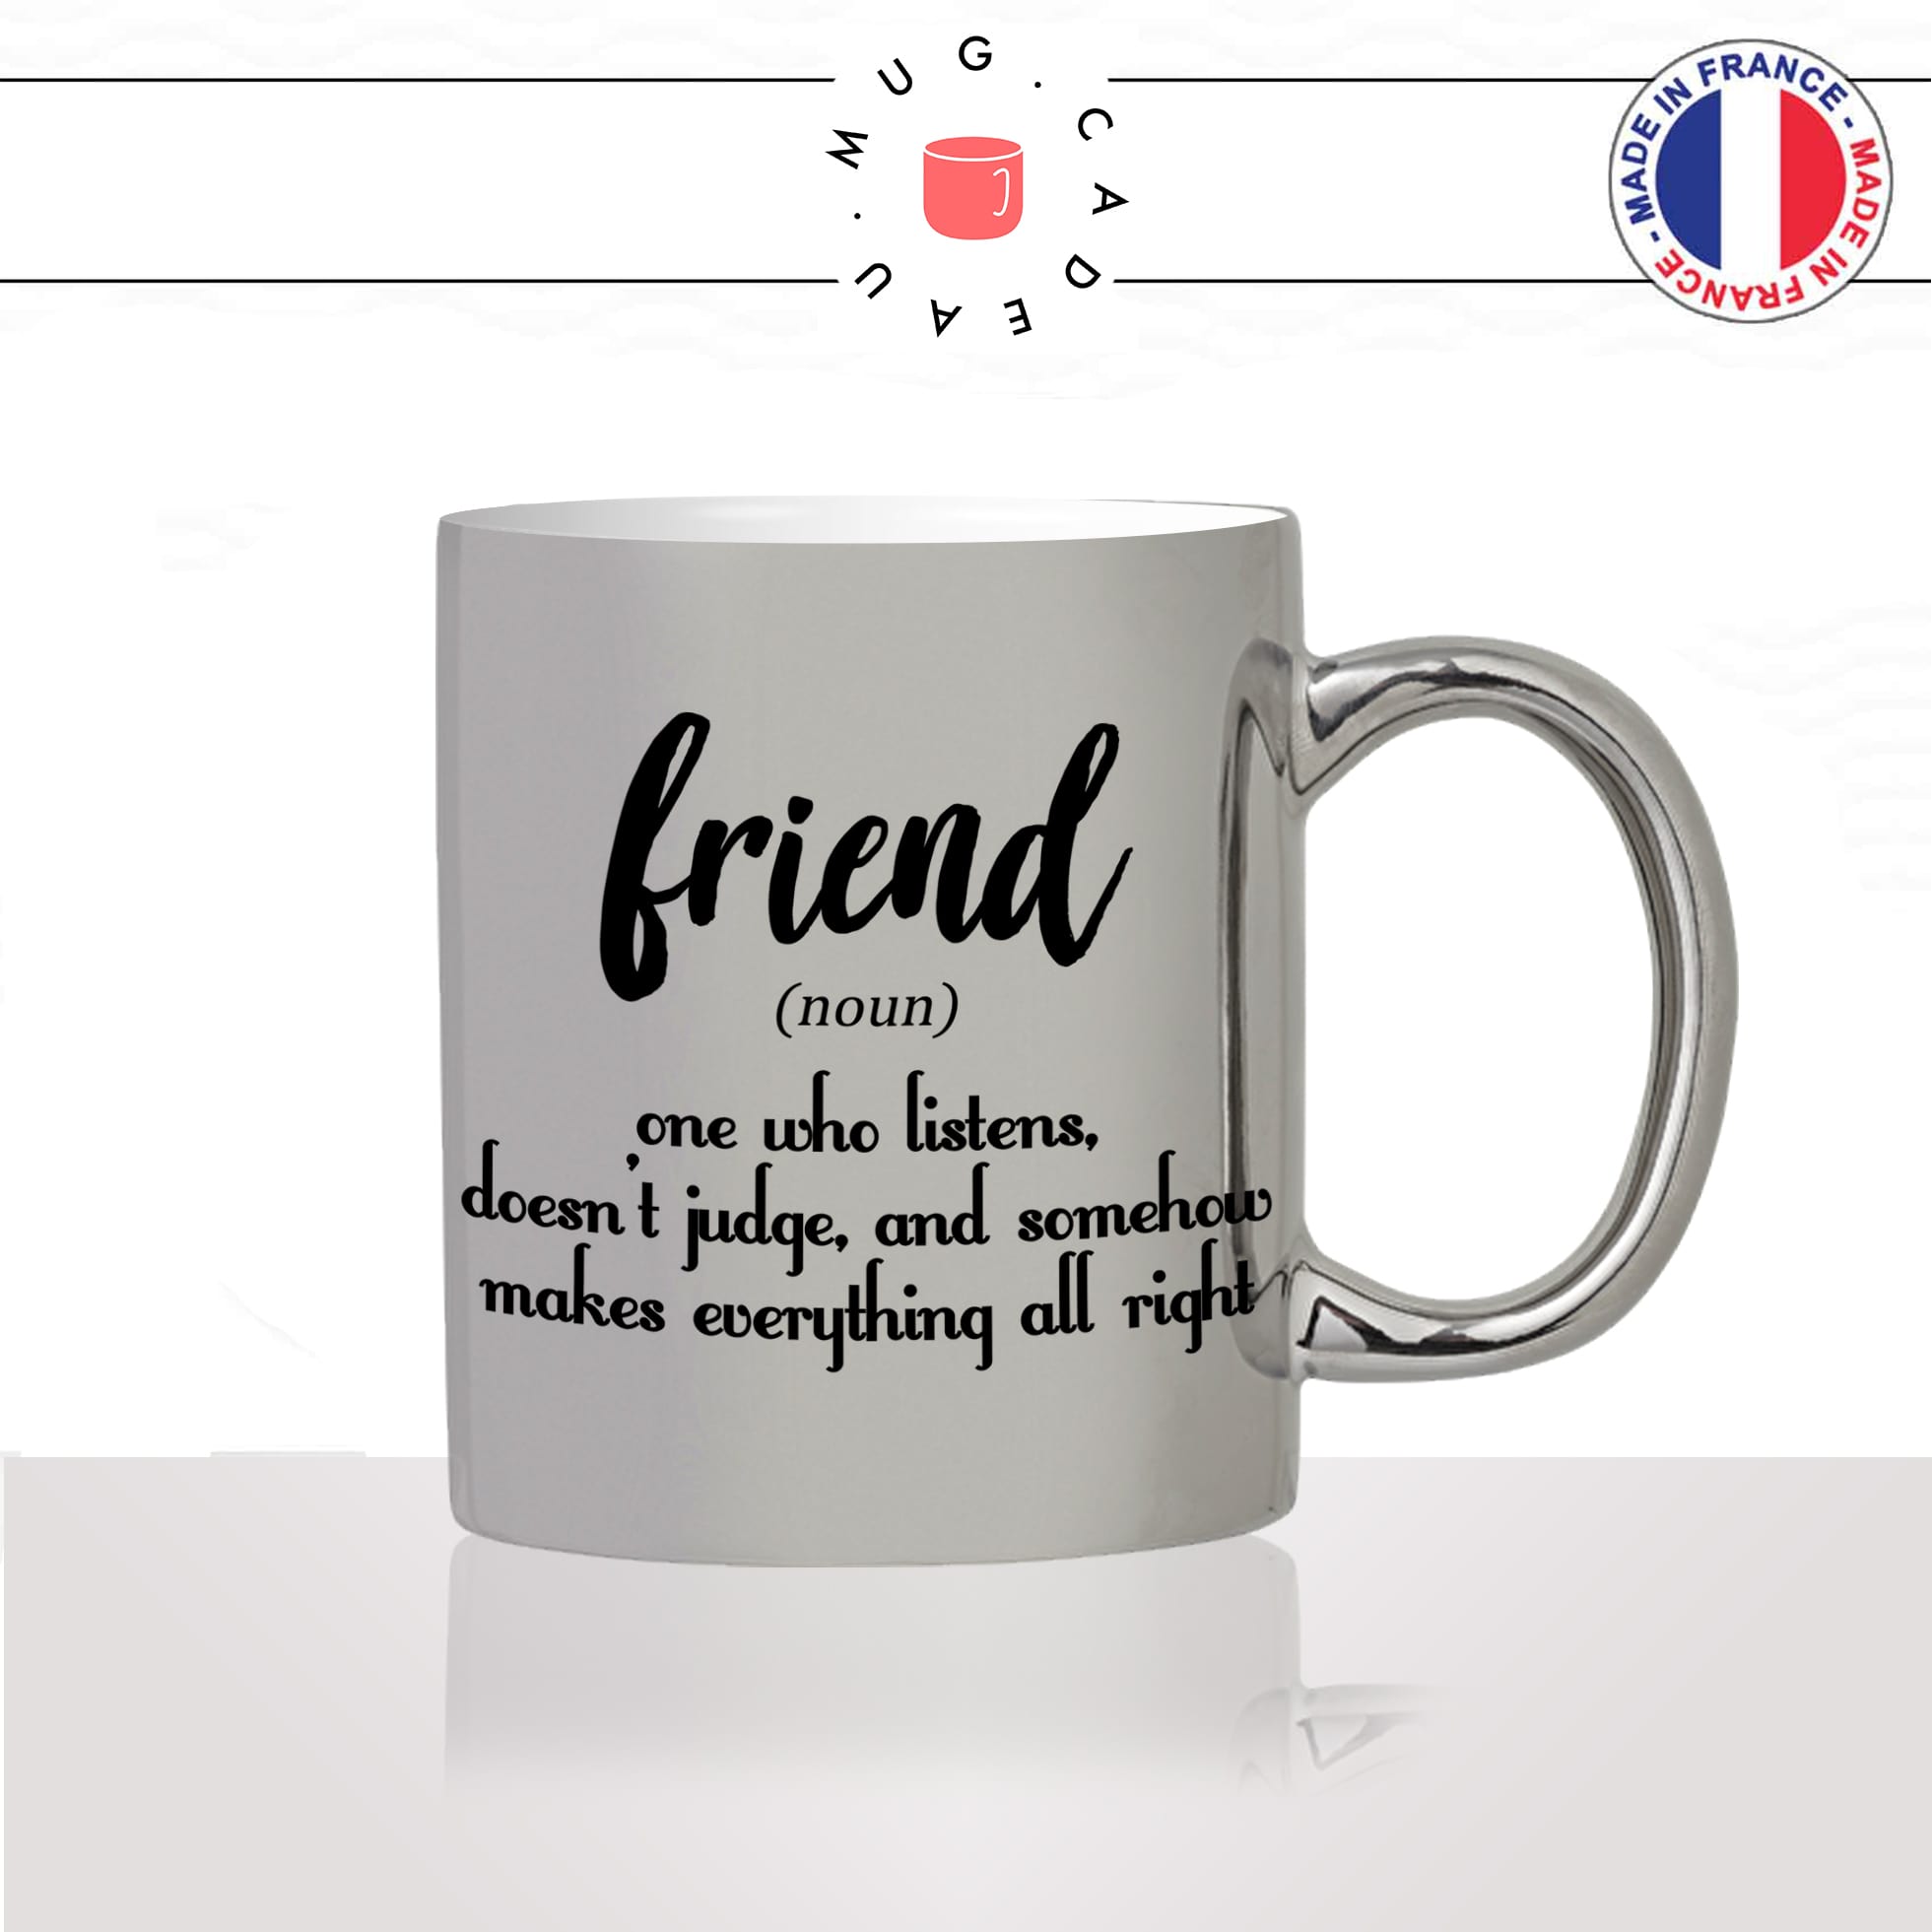 mug-tasse-silver-argenté-argent-friend-amitié-definition-anglais-amie-fille-pote-copine-idée-cadeau-original-personnalisé-café-thé2-min